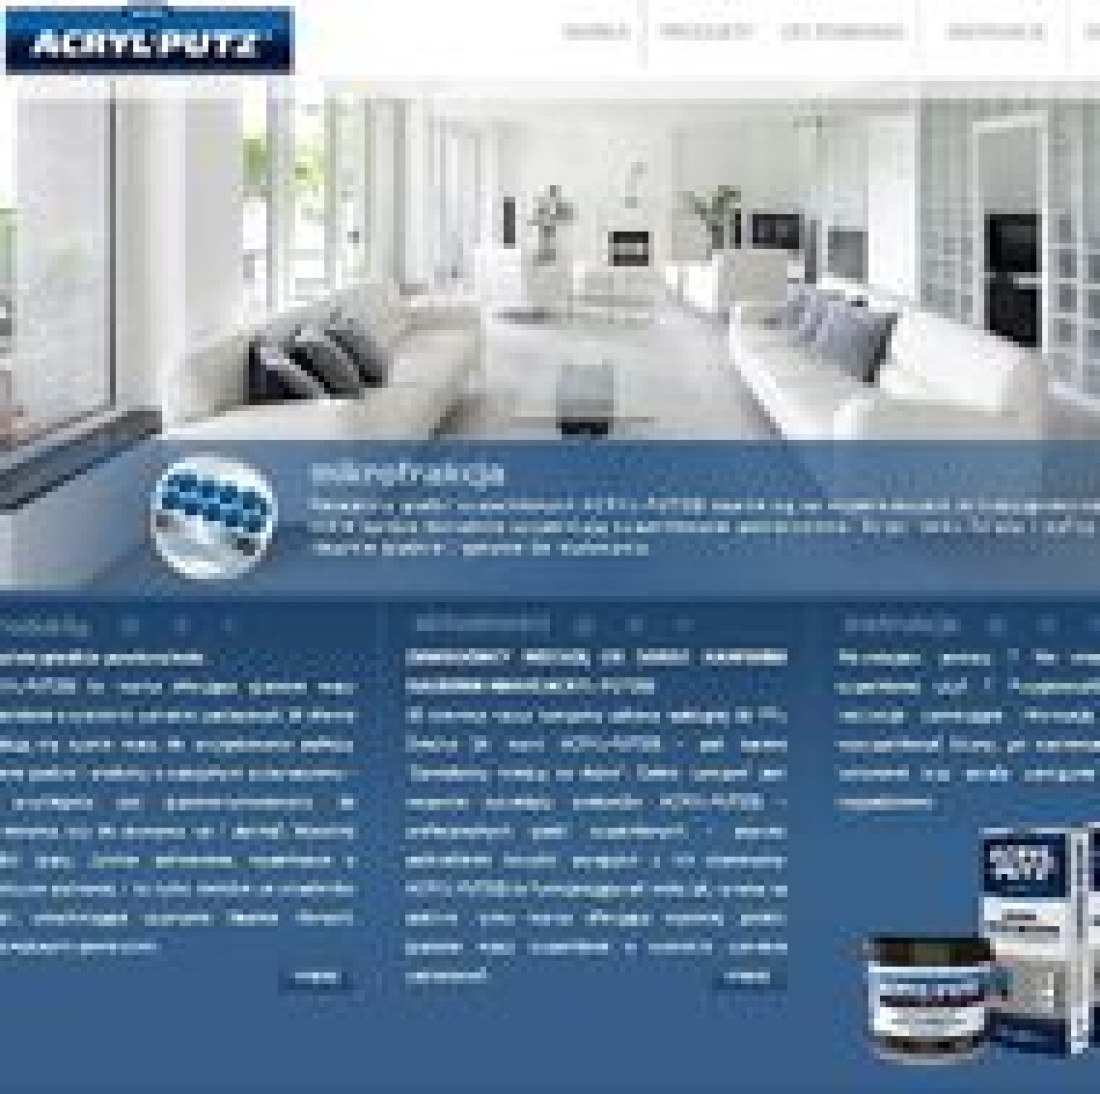 Śnieżka - nowy serwis internetowy marki ACRYL-PUTZ